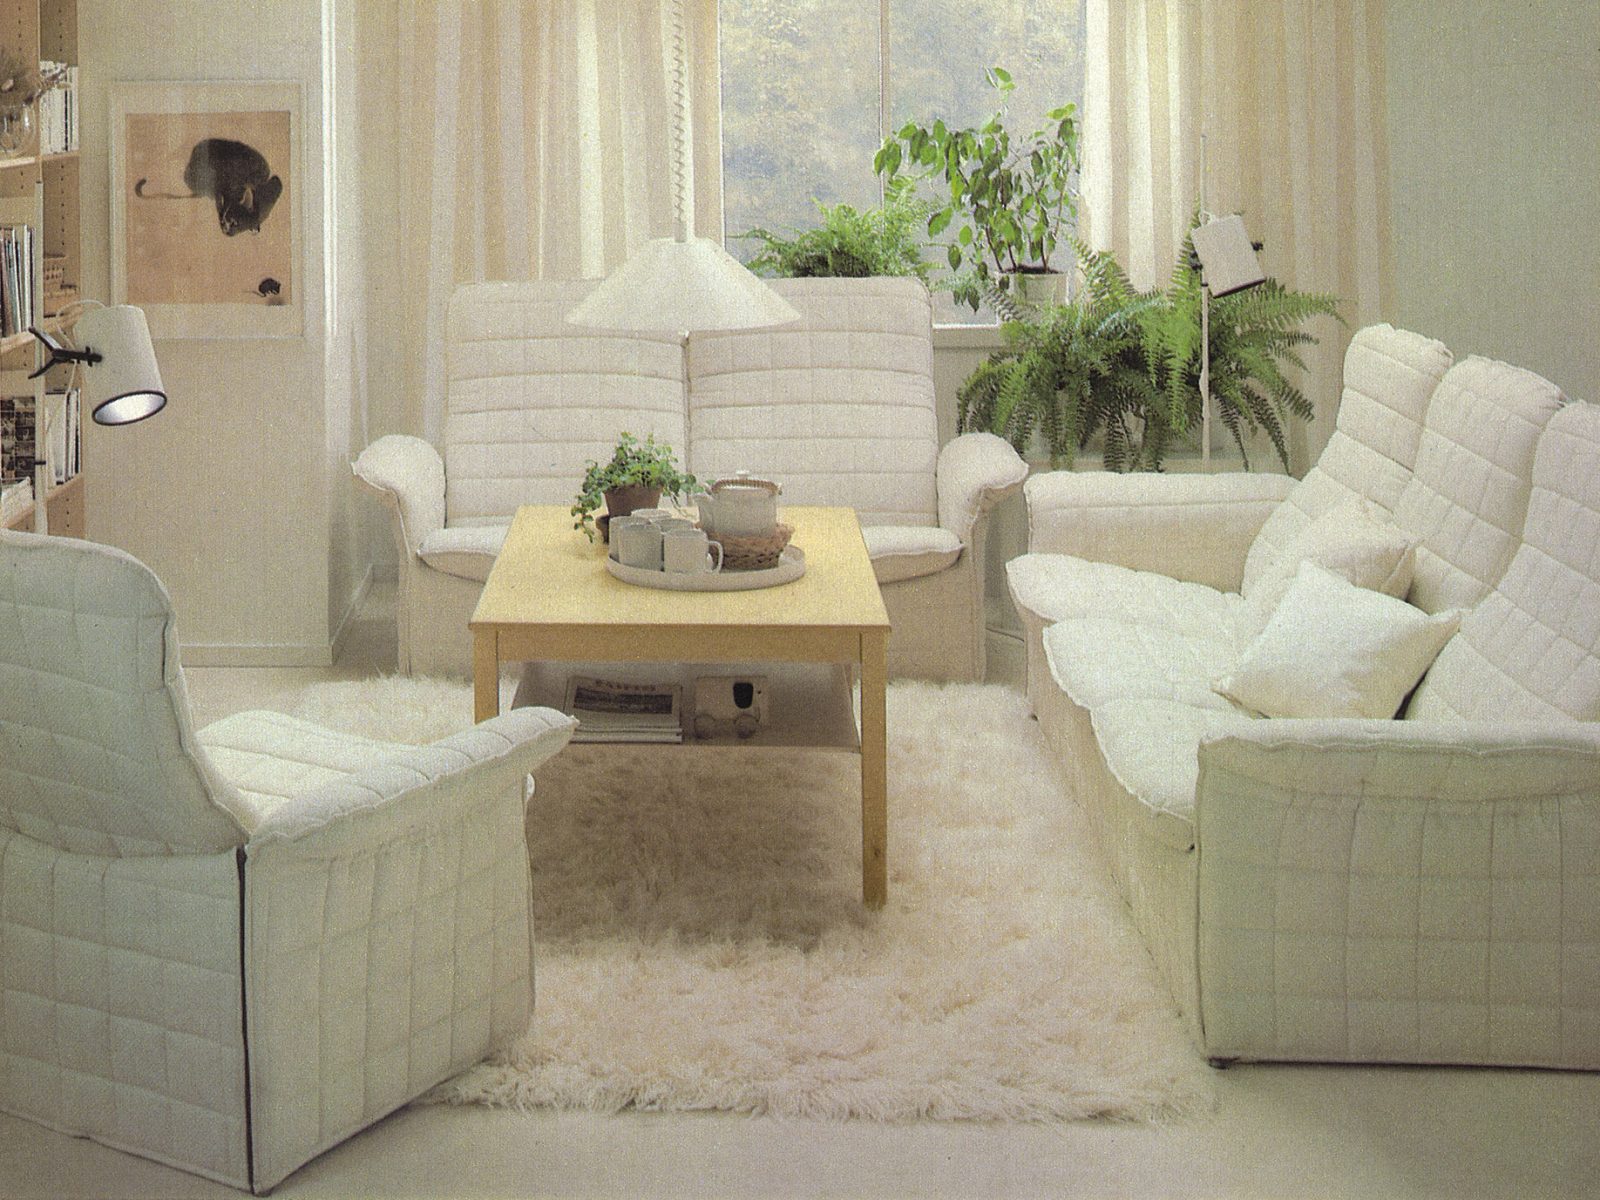 Ljus interiörbild från IKEA katalogen, vit fåtölj och soffa, TULLANÄS, står på vit ryamatta.